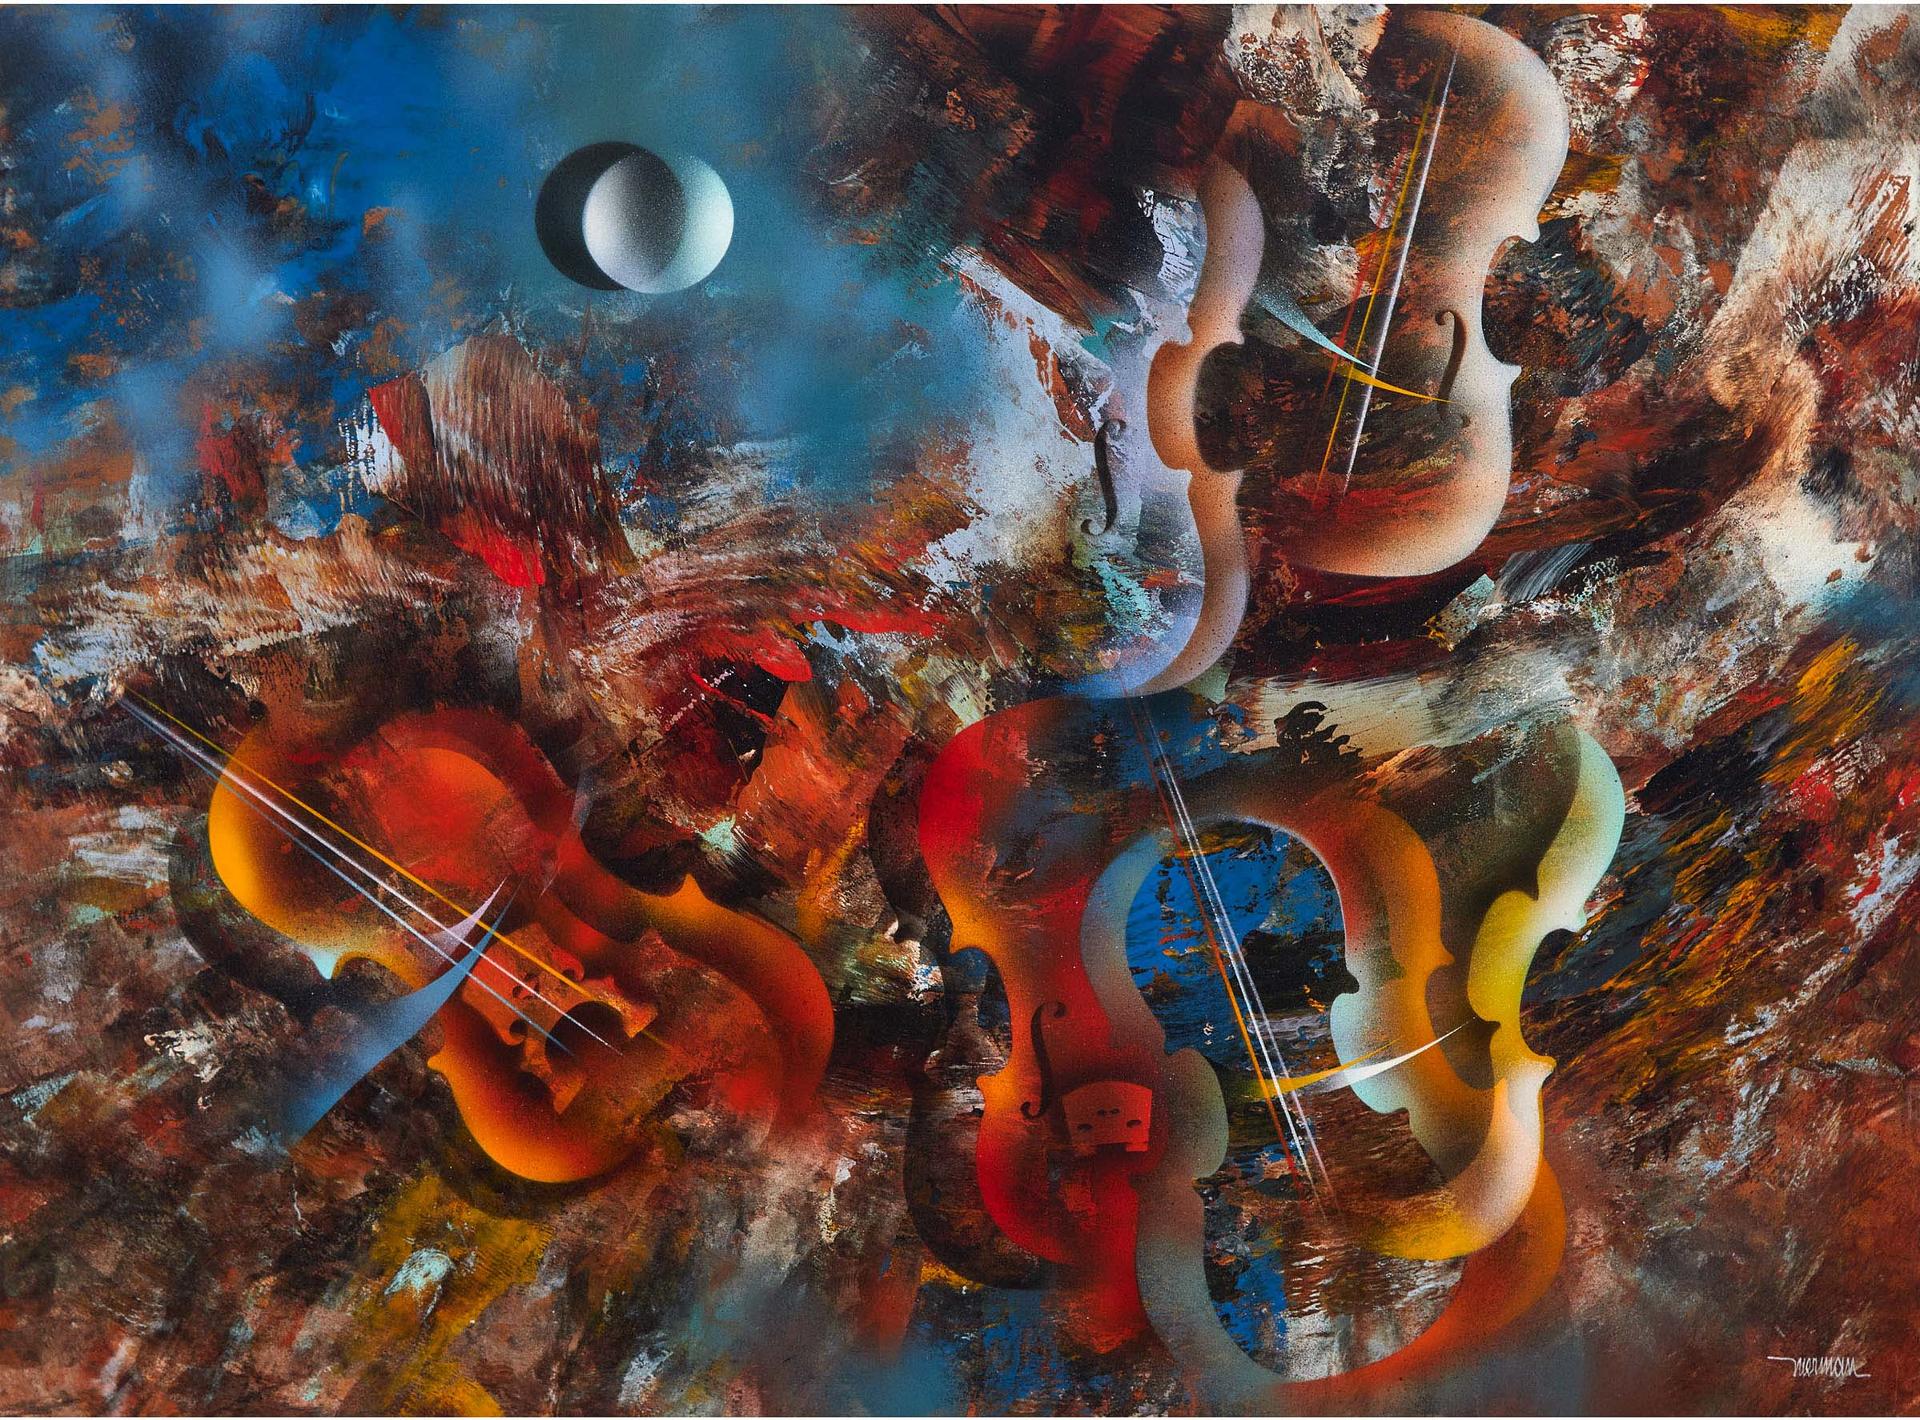 Leonardo Nierman (1932) - Music